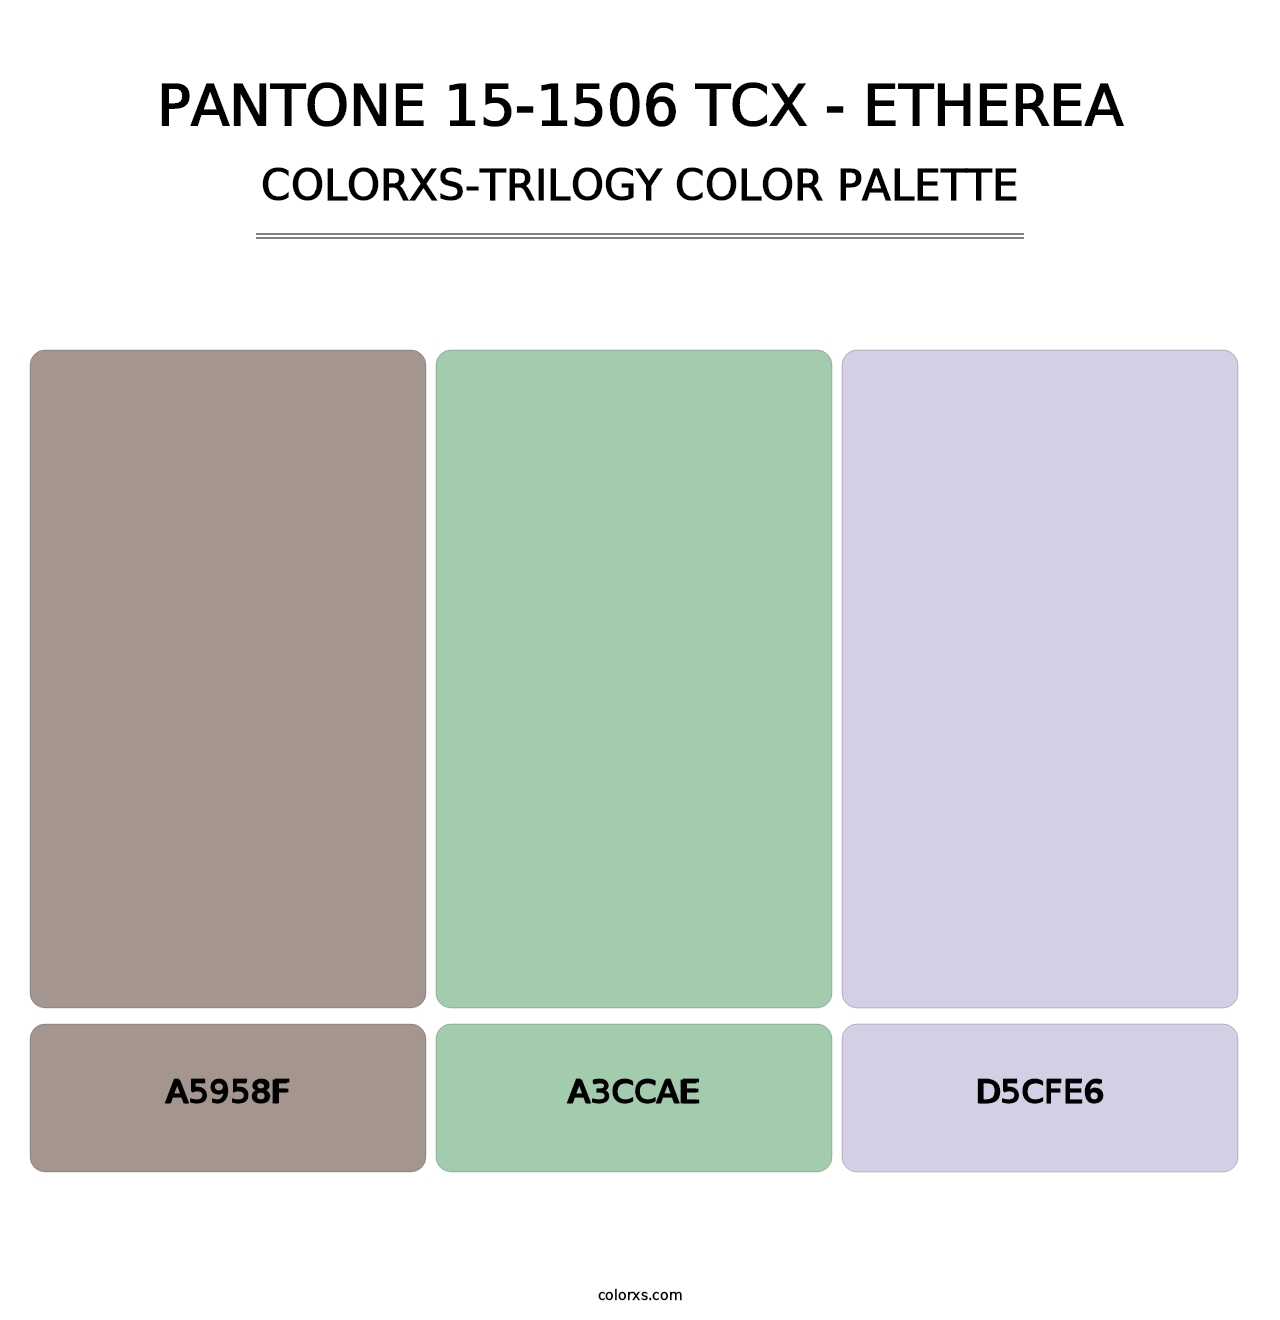 PANTONE 15-1506 TCX - Etherea - Colorxs Trilogy Palette